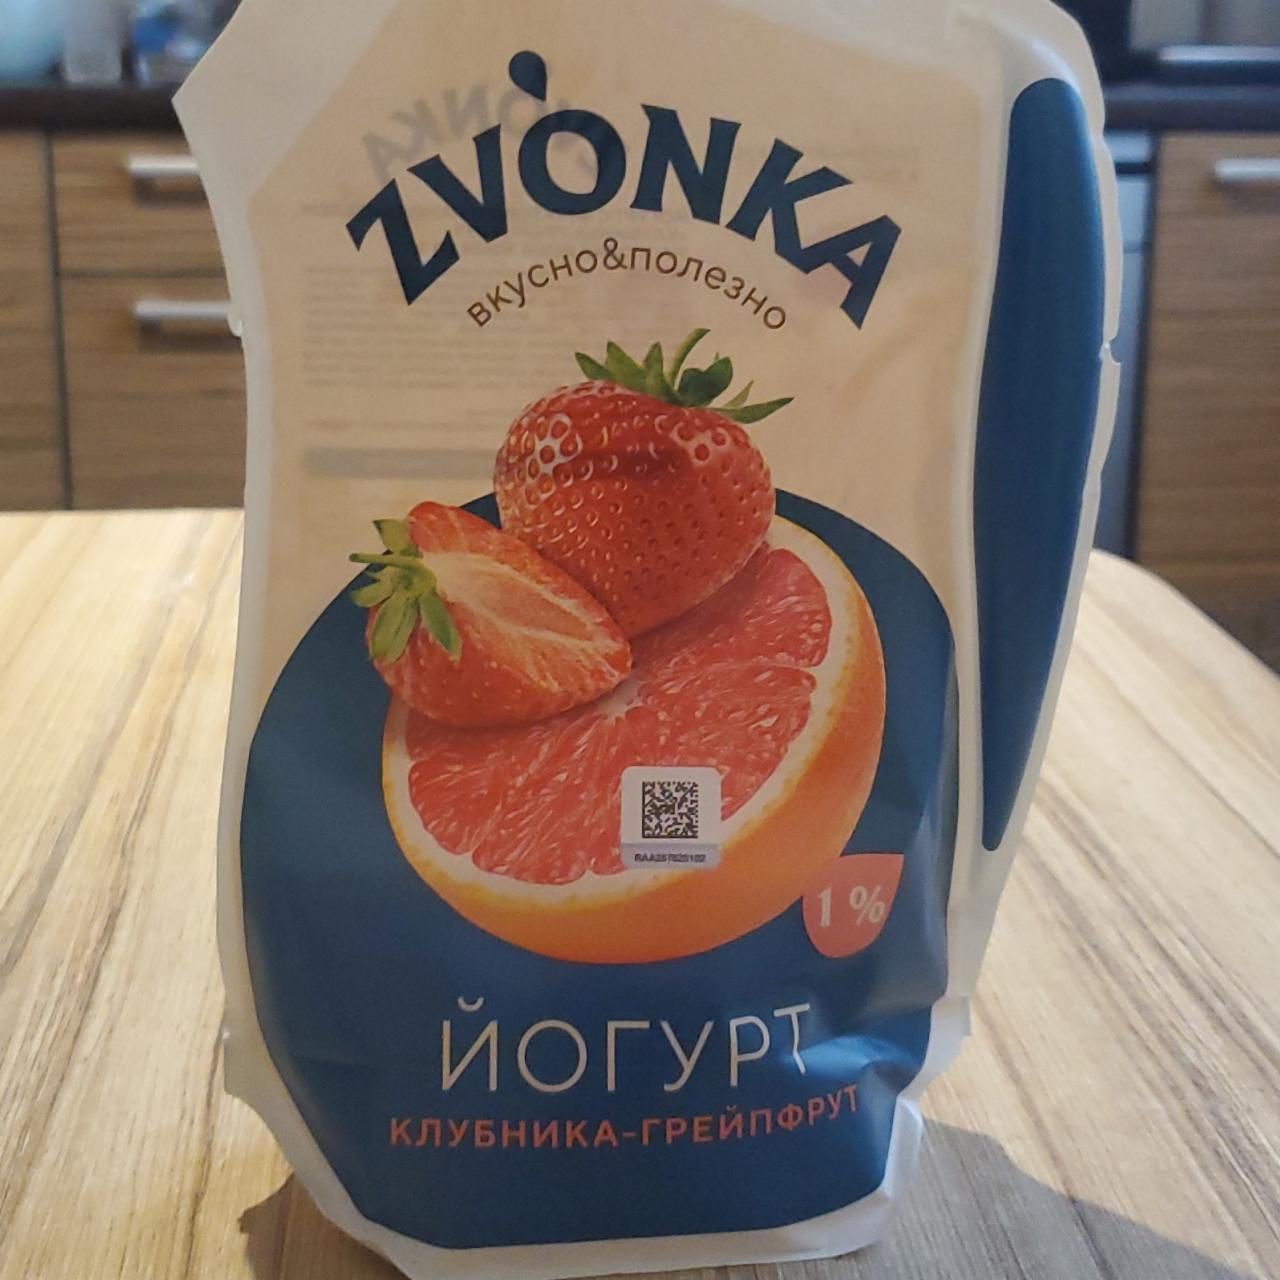 Фото - Йогурт клубника-грейпфрут 1% Zvonka